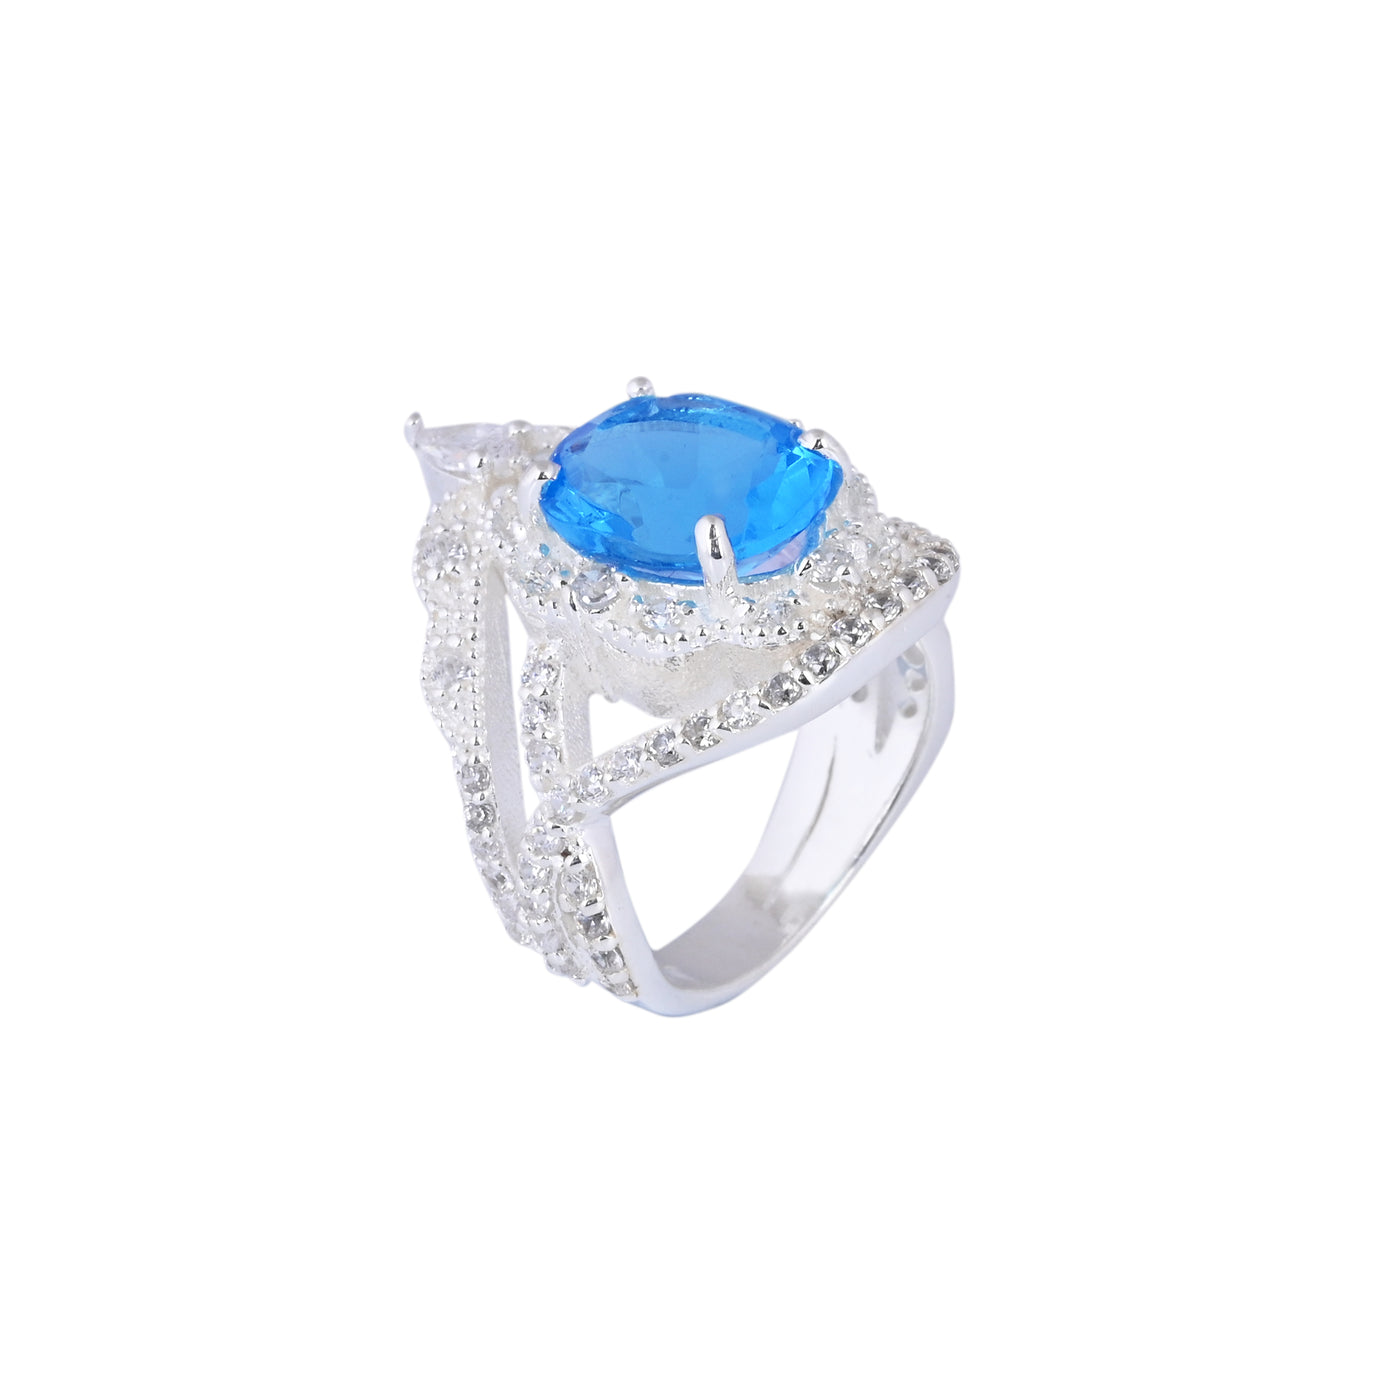 London Blue Topaz Engagement Gift Ring